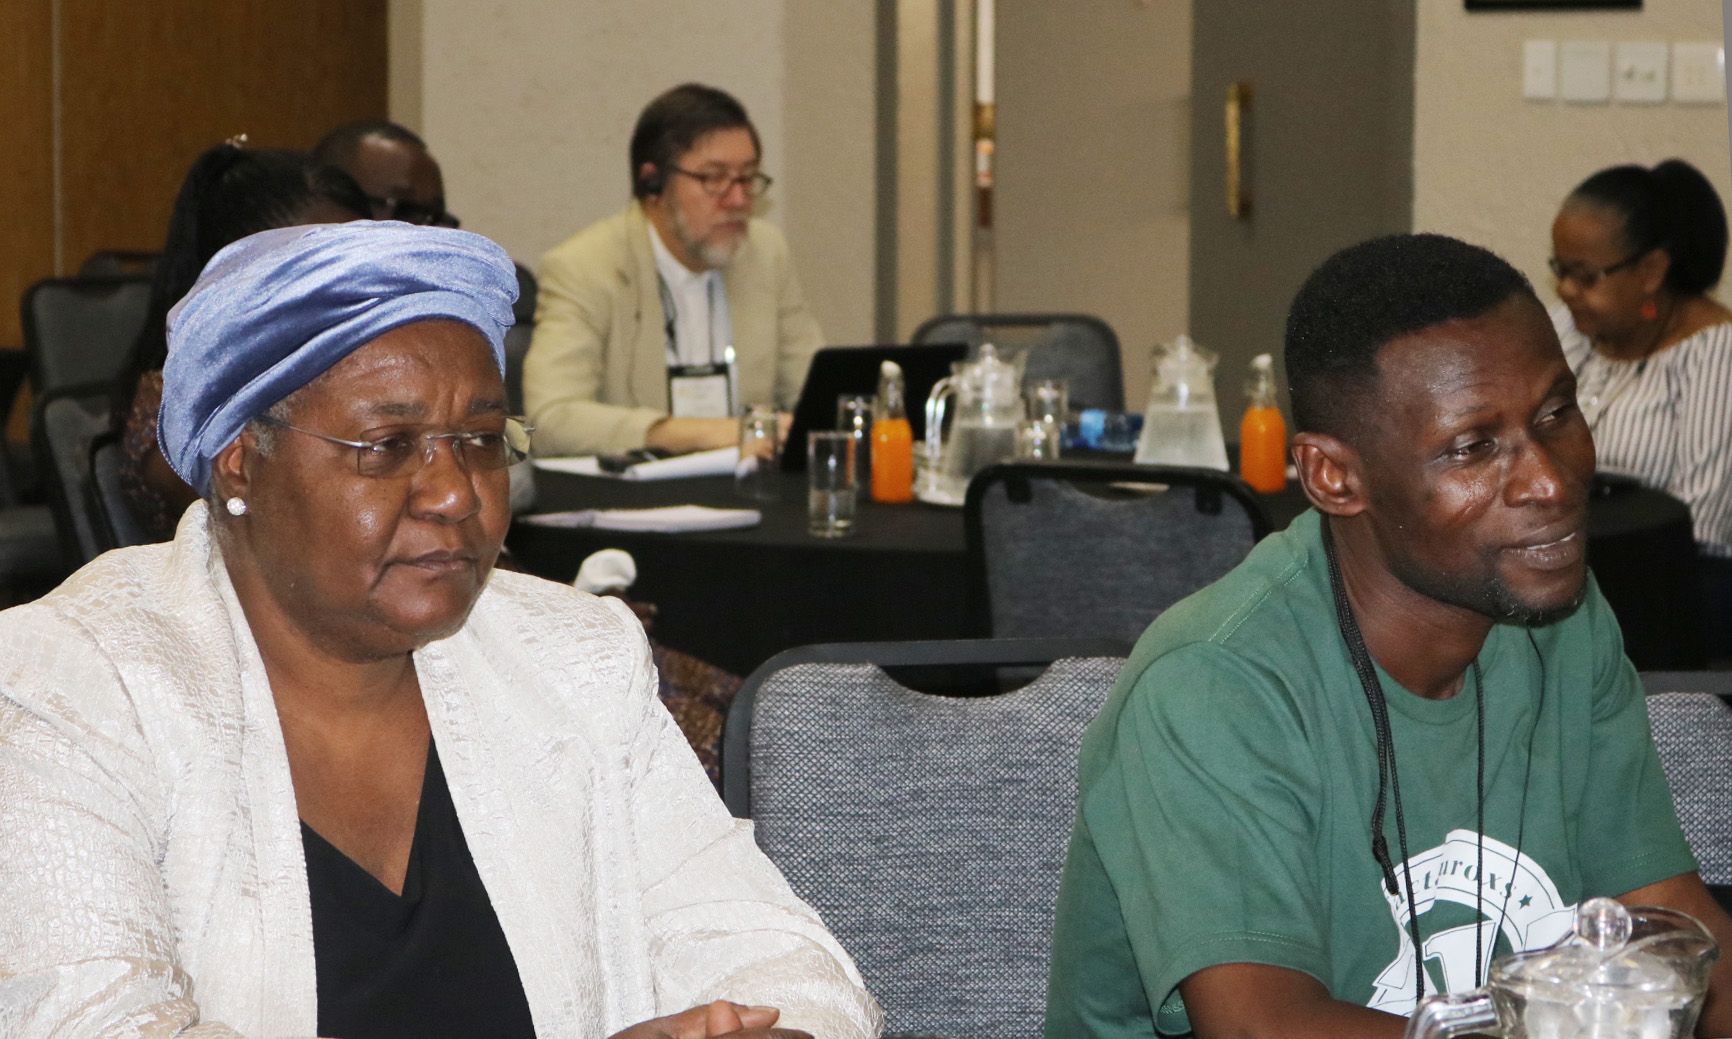 L'Évêque Joaquina F. Nhanala du Mozambique (à gauche) et le missionnaire Innocent P. Afful écoutent les plans de l'Église Méthodiste Unie pour les terres existantes en Afrique lors d'un sommet agricole qui s'est tenu du 13 au 16 janvier 2019 à Johannesburg. Afful est décédé le 17 avril à l'âge de 49 ans. Photo d'archive par Eveline Chikwanah, UM News.